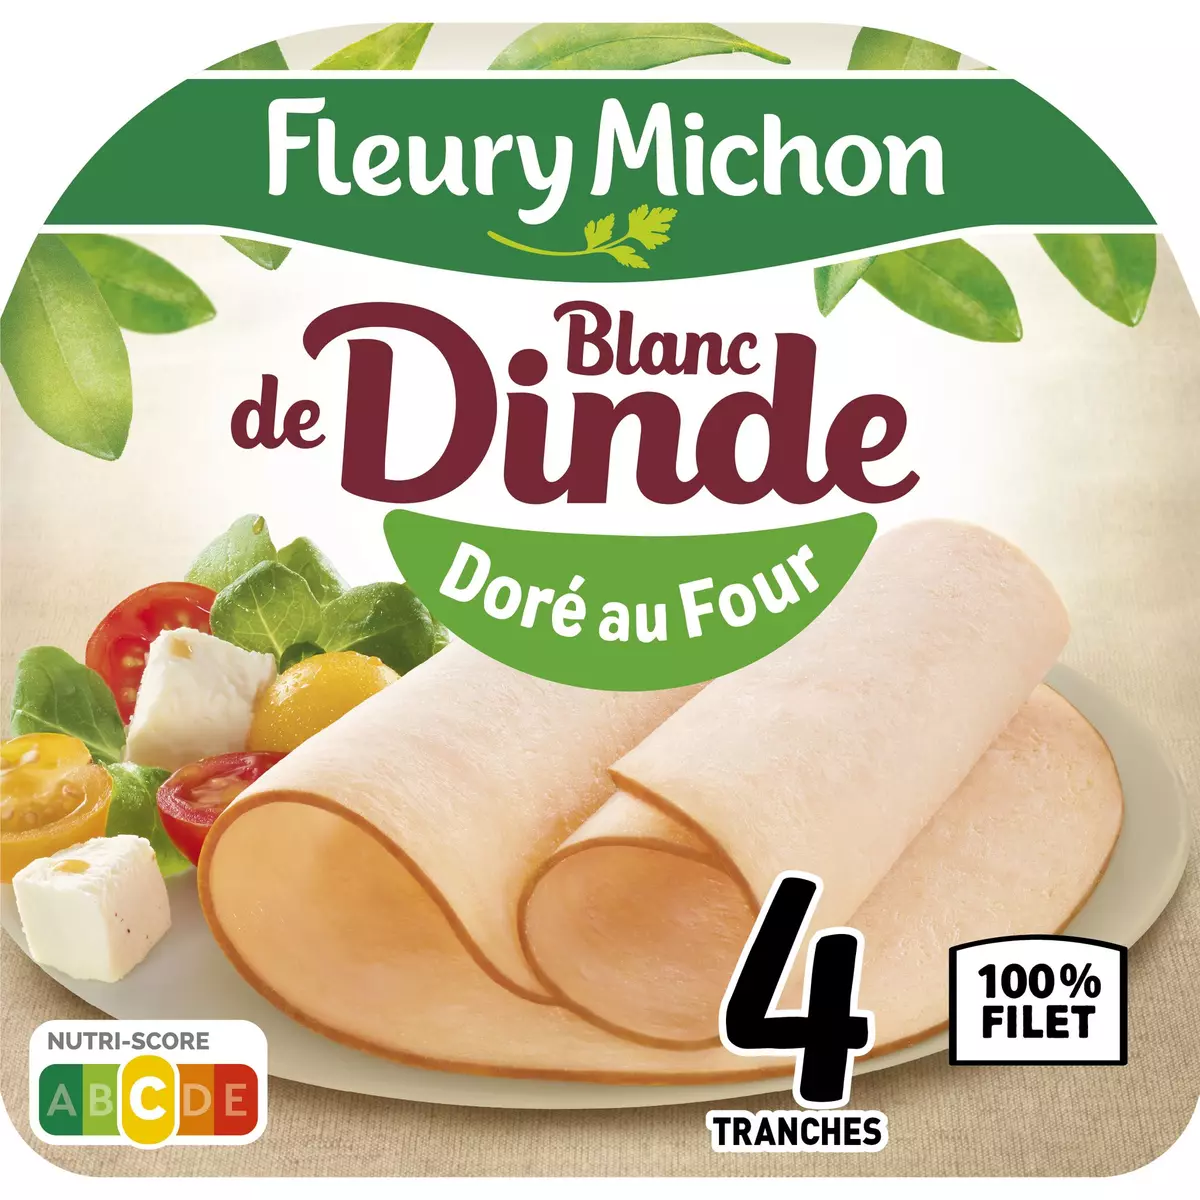 FLEURY MICHON Blanc de dinde doré au four 4 tranches 160g